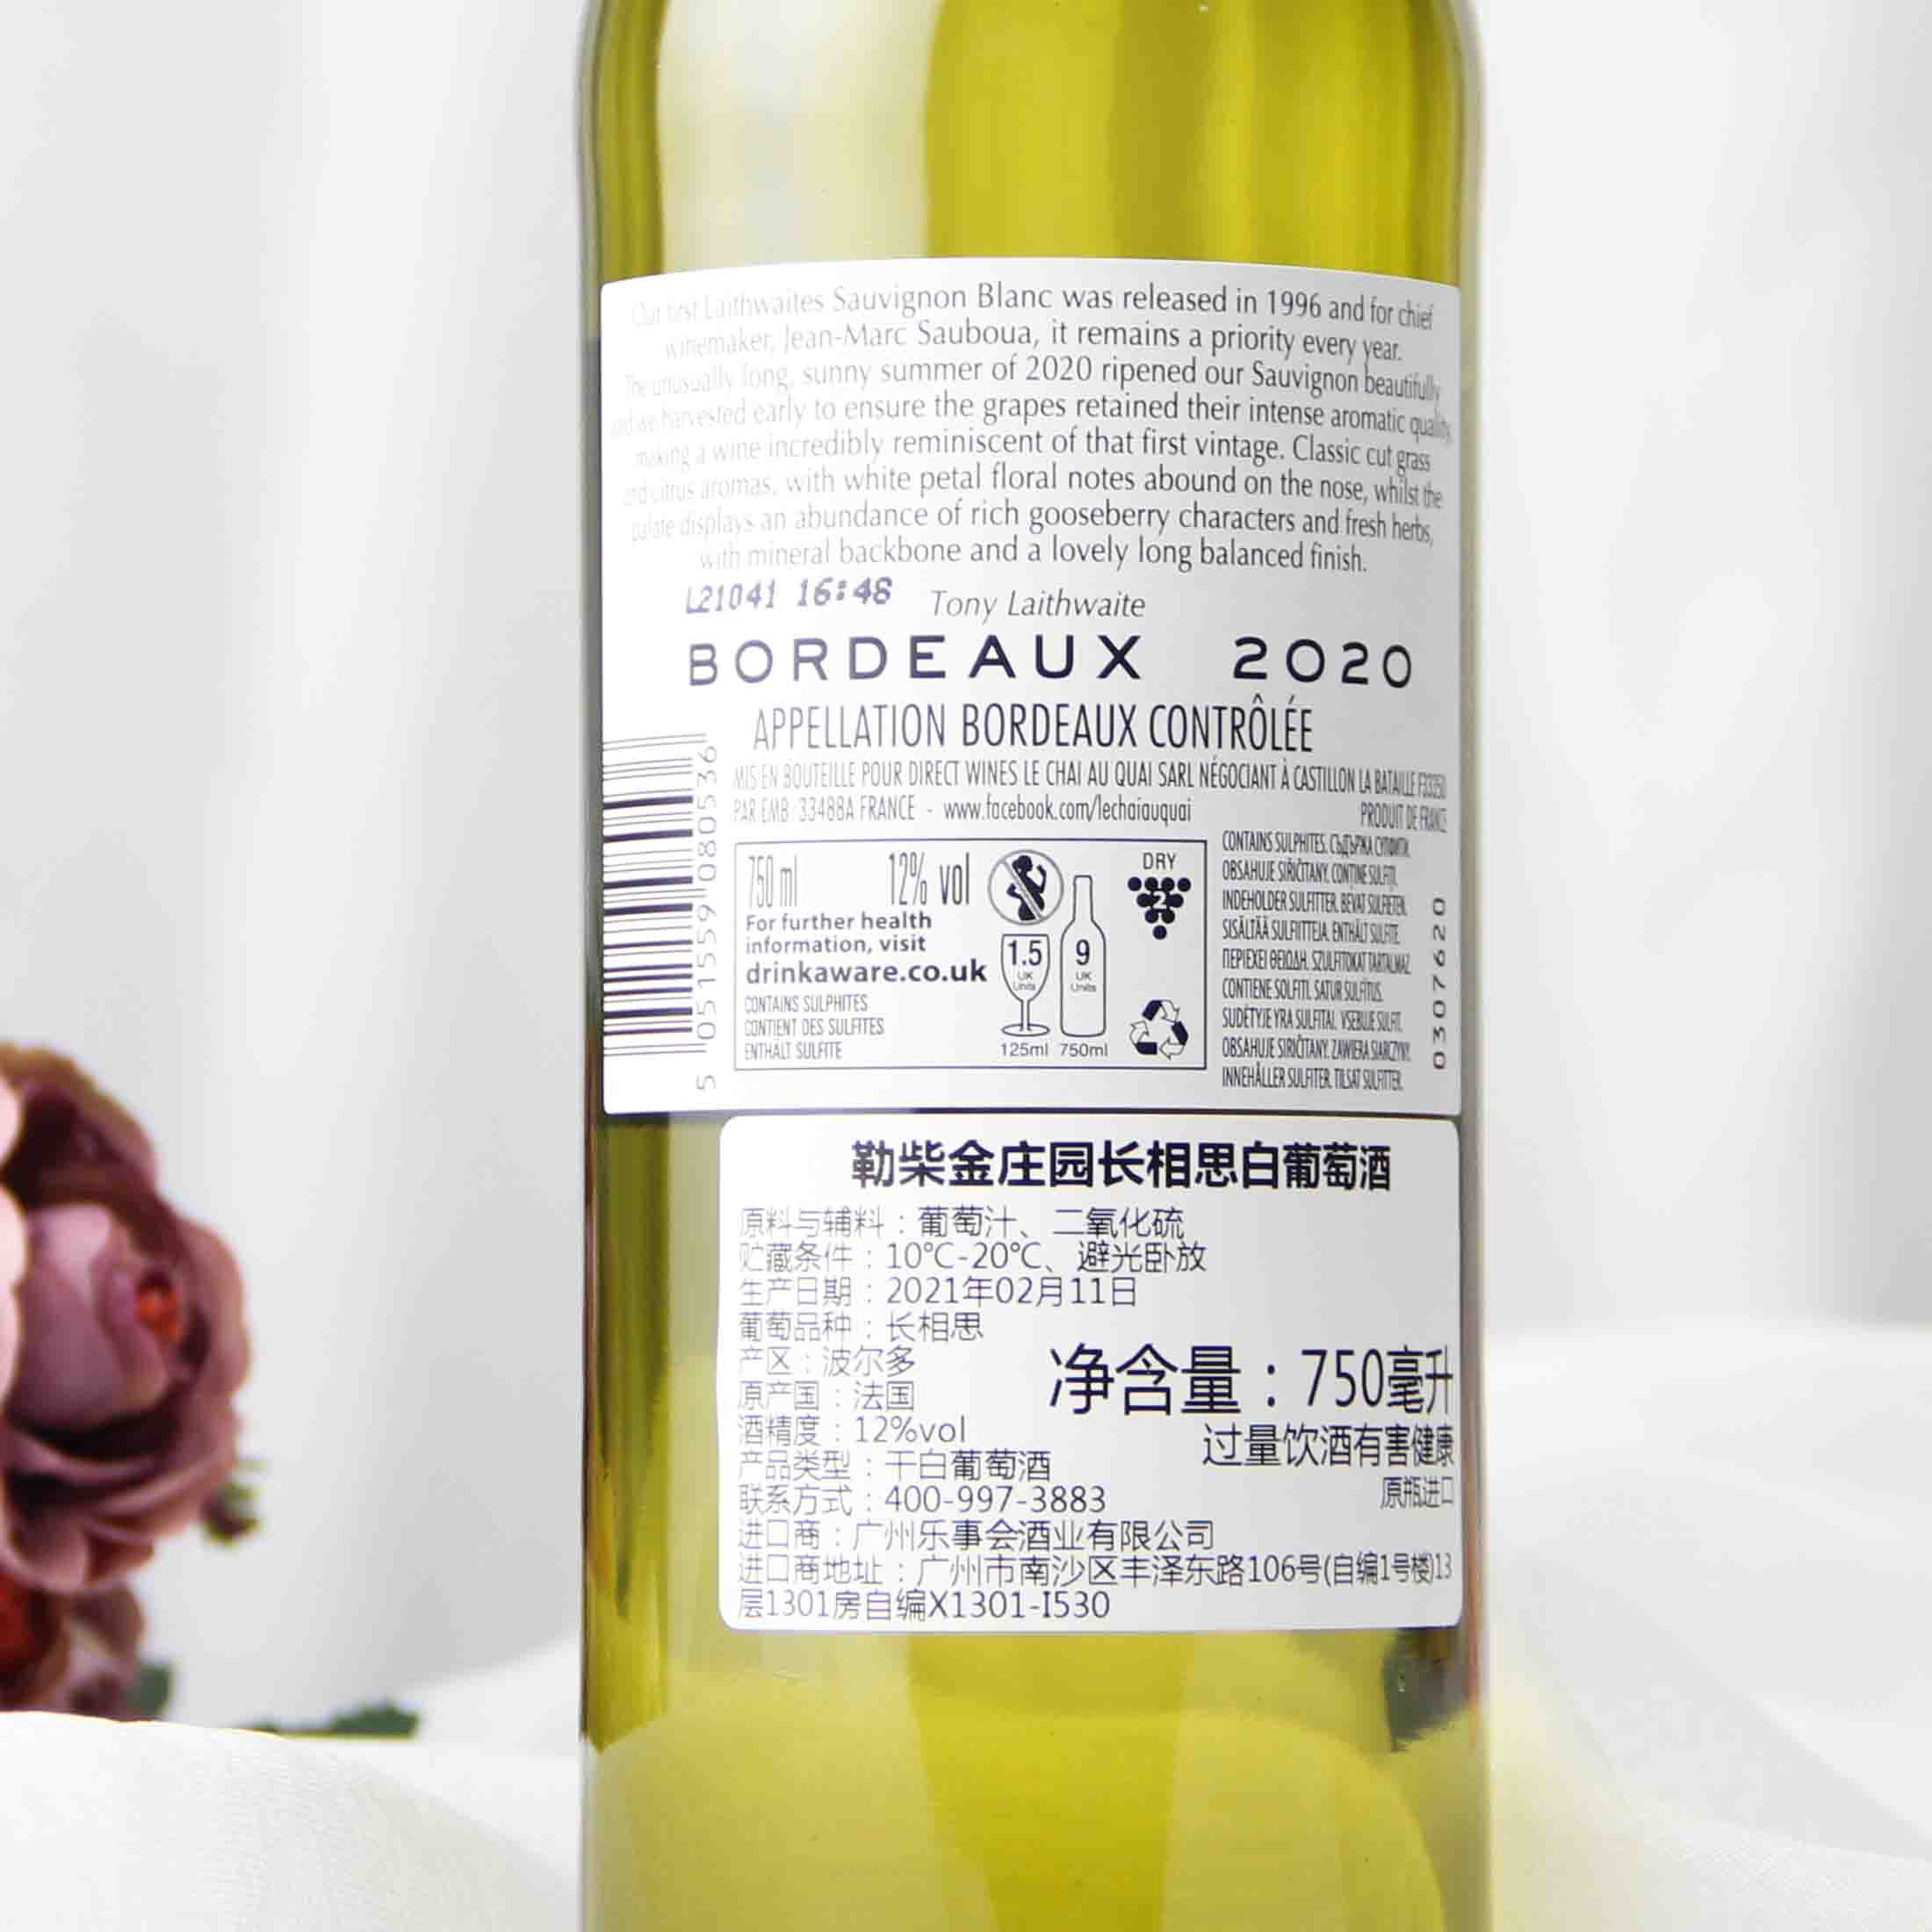 法国勒柴金庄园波尔多长相思白葡萄酒 2020